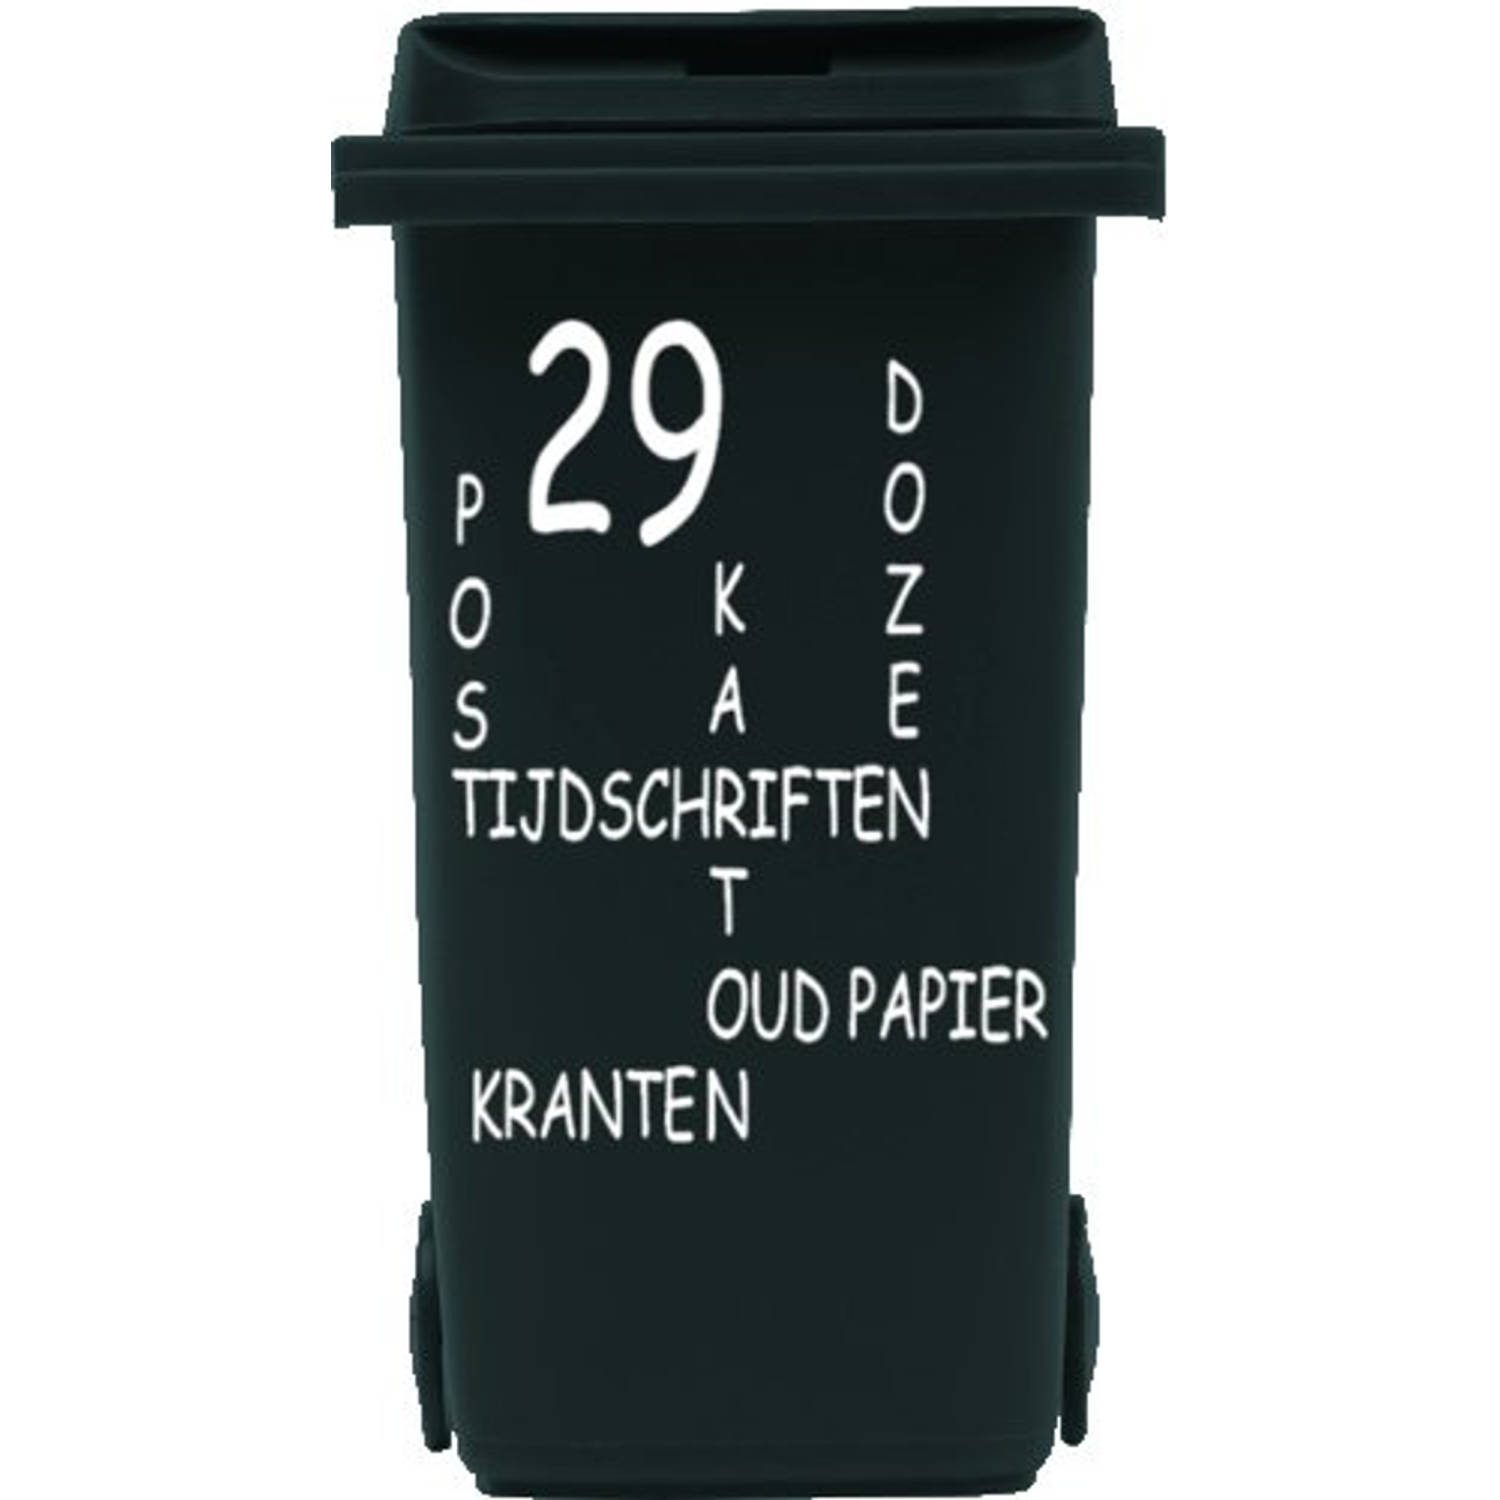 Sticker voor papier kliko container met huisnummer | Rosami